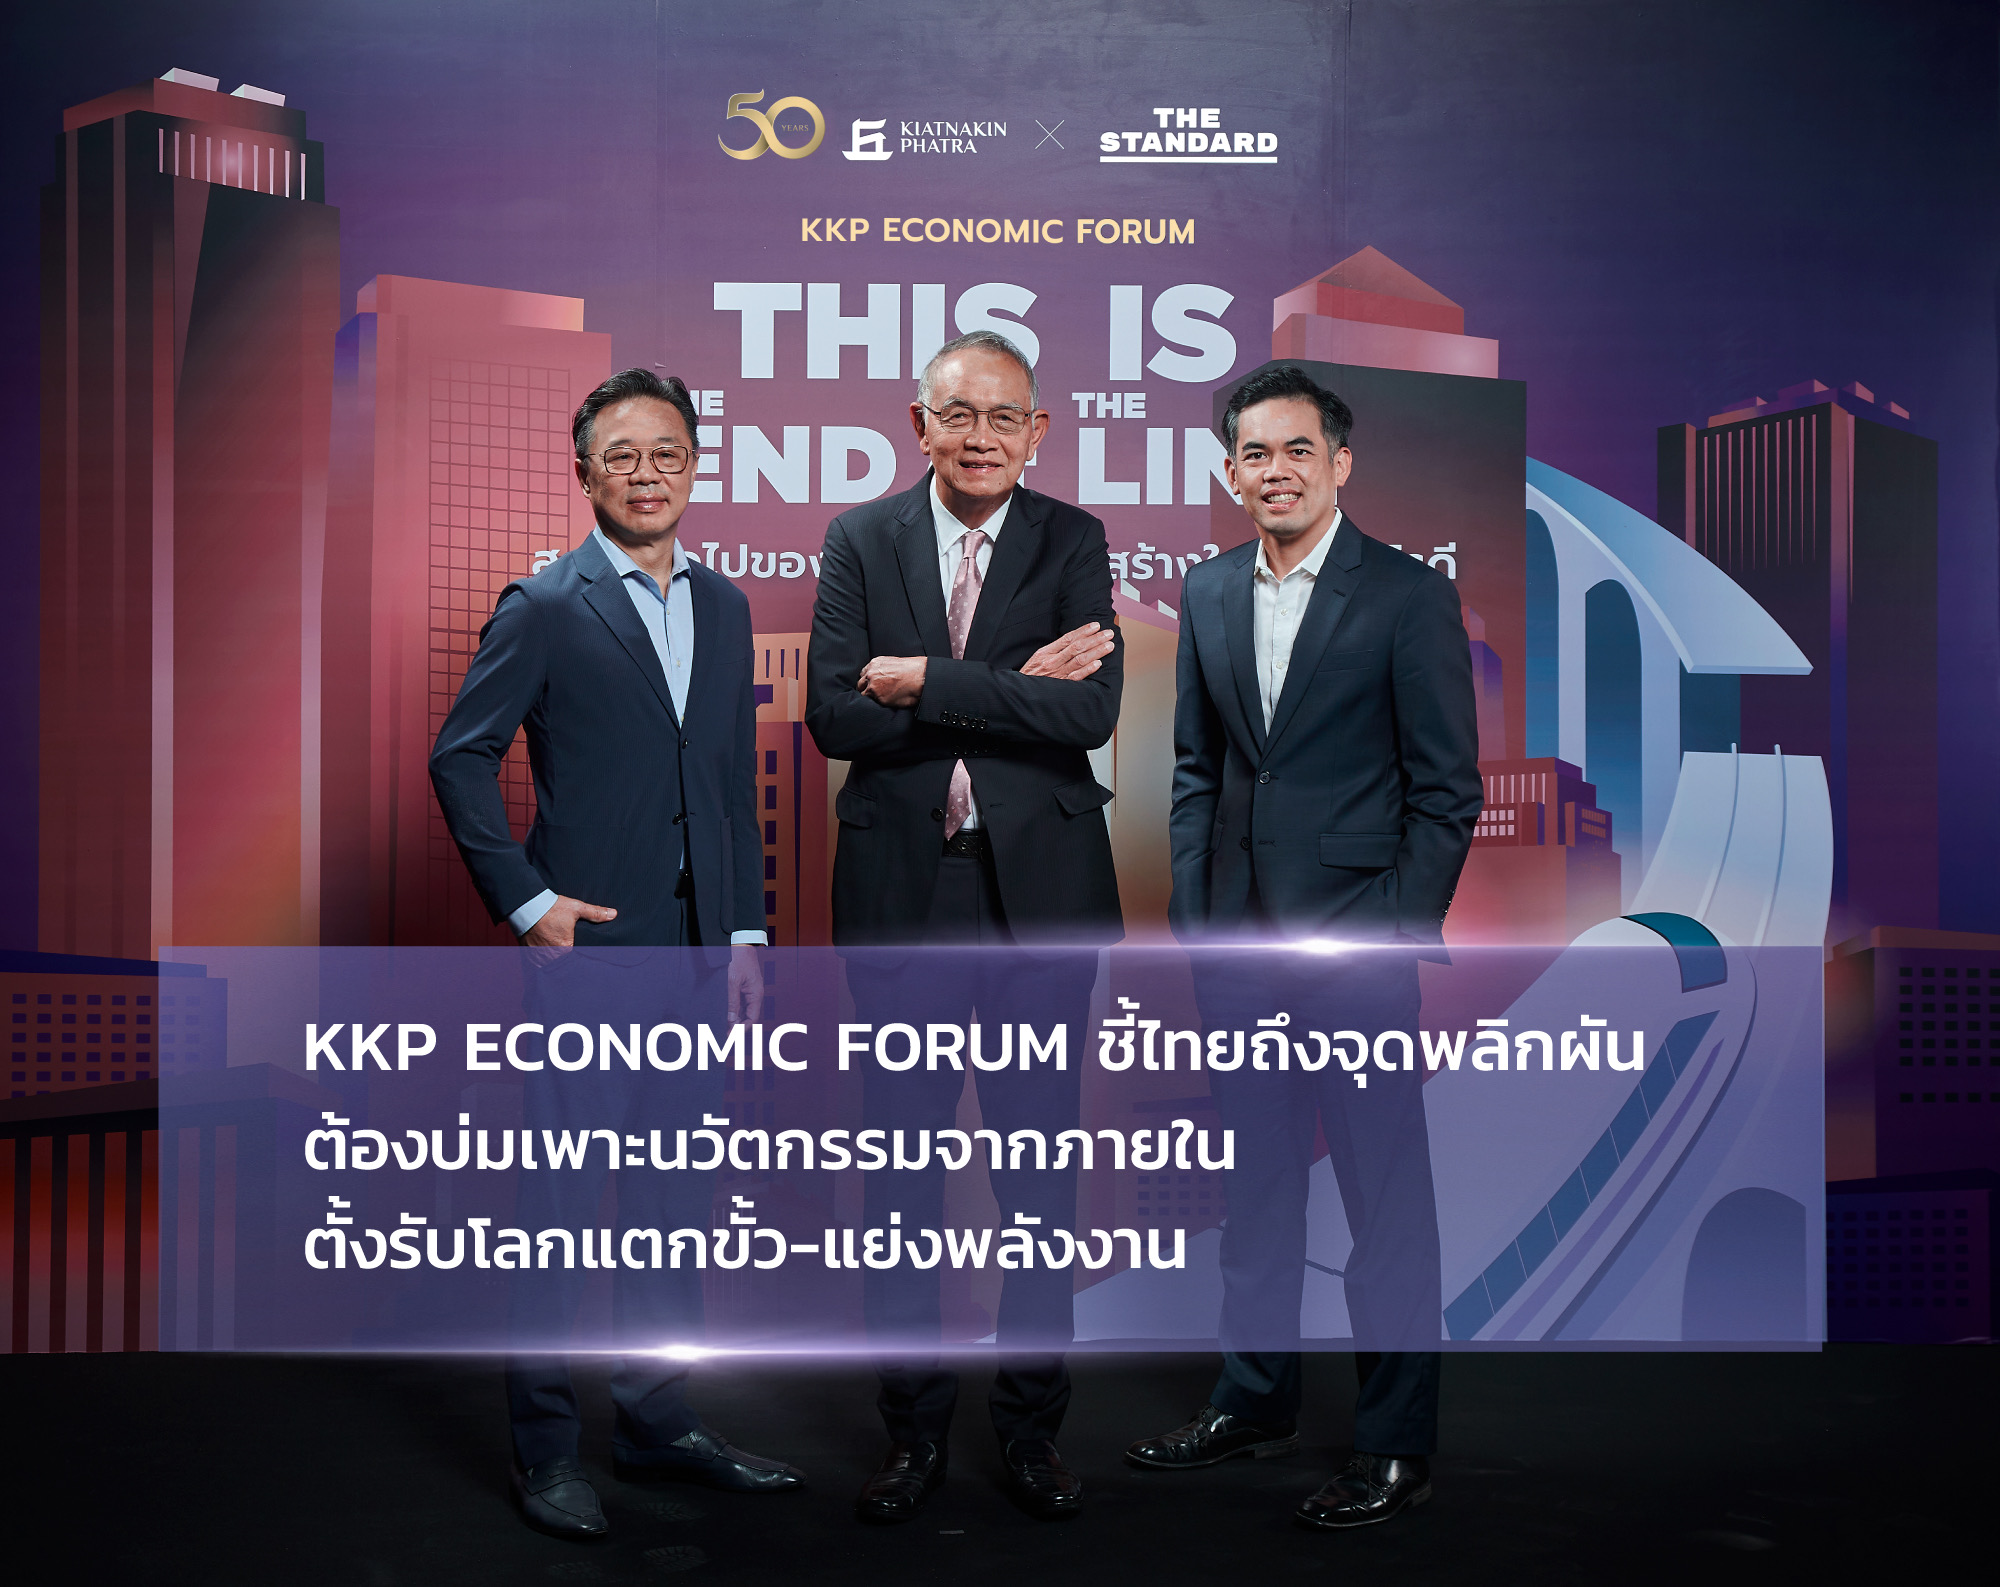 KKP Economic Forum ชี้ไทยถึงจุดพลิกผัน  ต้องบ่มเพาะนวัตกรรมจากภายใน ตั้งรับโลกแตกขั้ว-แย่งพลังงาน